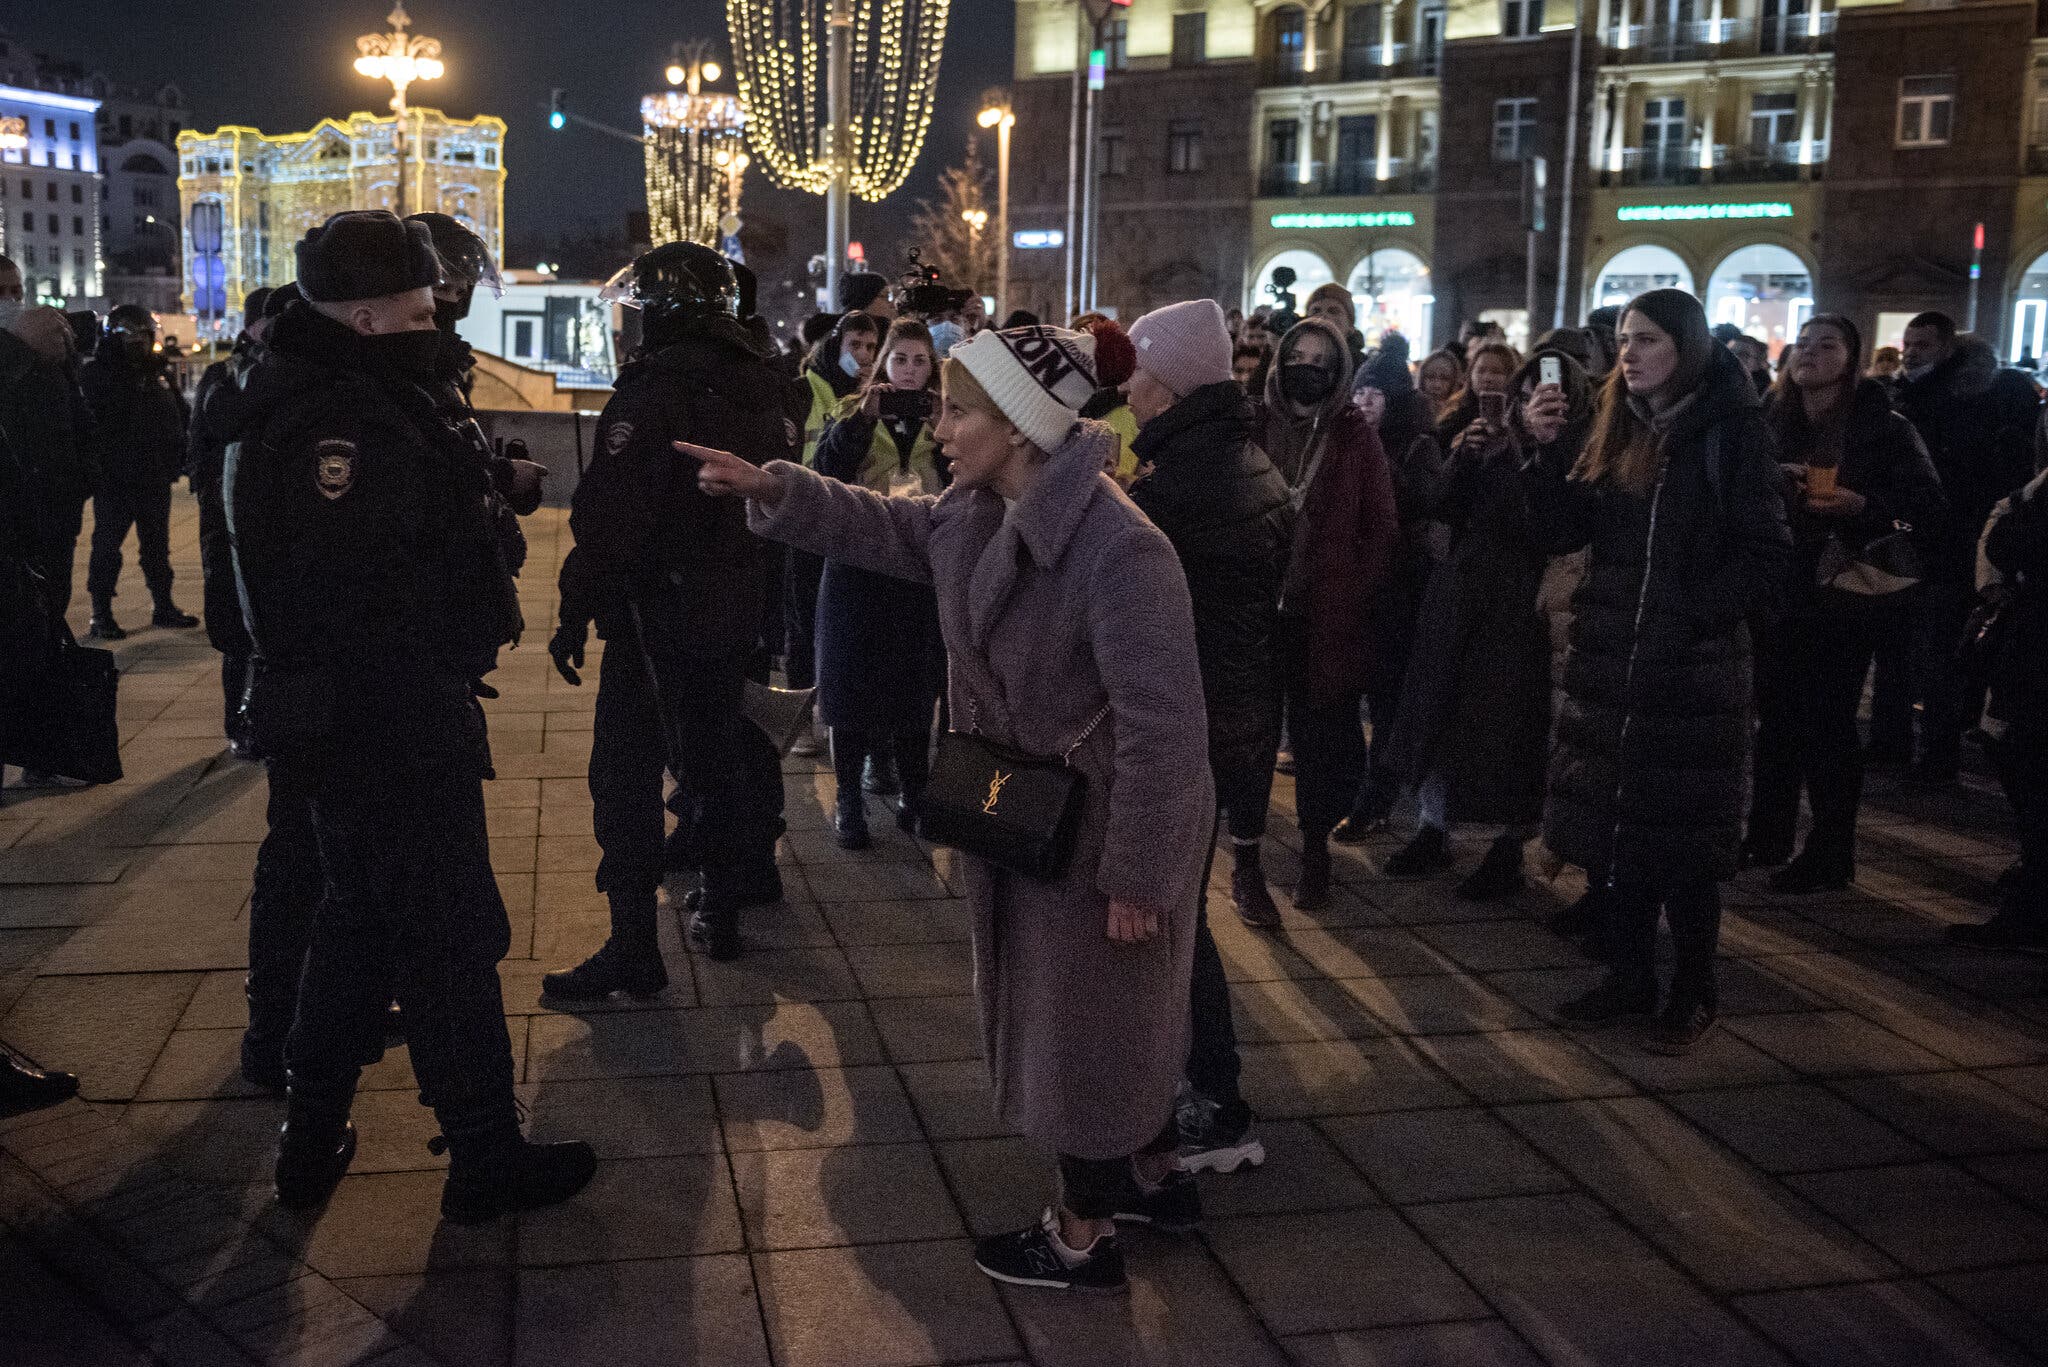 Διαδηλωτές σε αντιπολεμική πορεία στη Μόσχα το Σάββατο 26/2 (Φωτογραφία: Sergey Ponomarev - The New York Times)